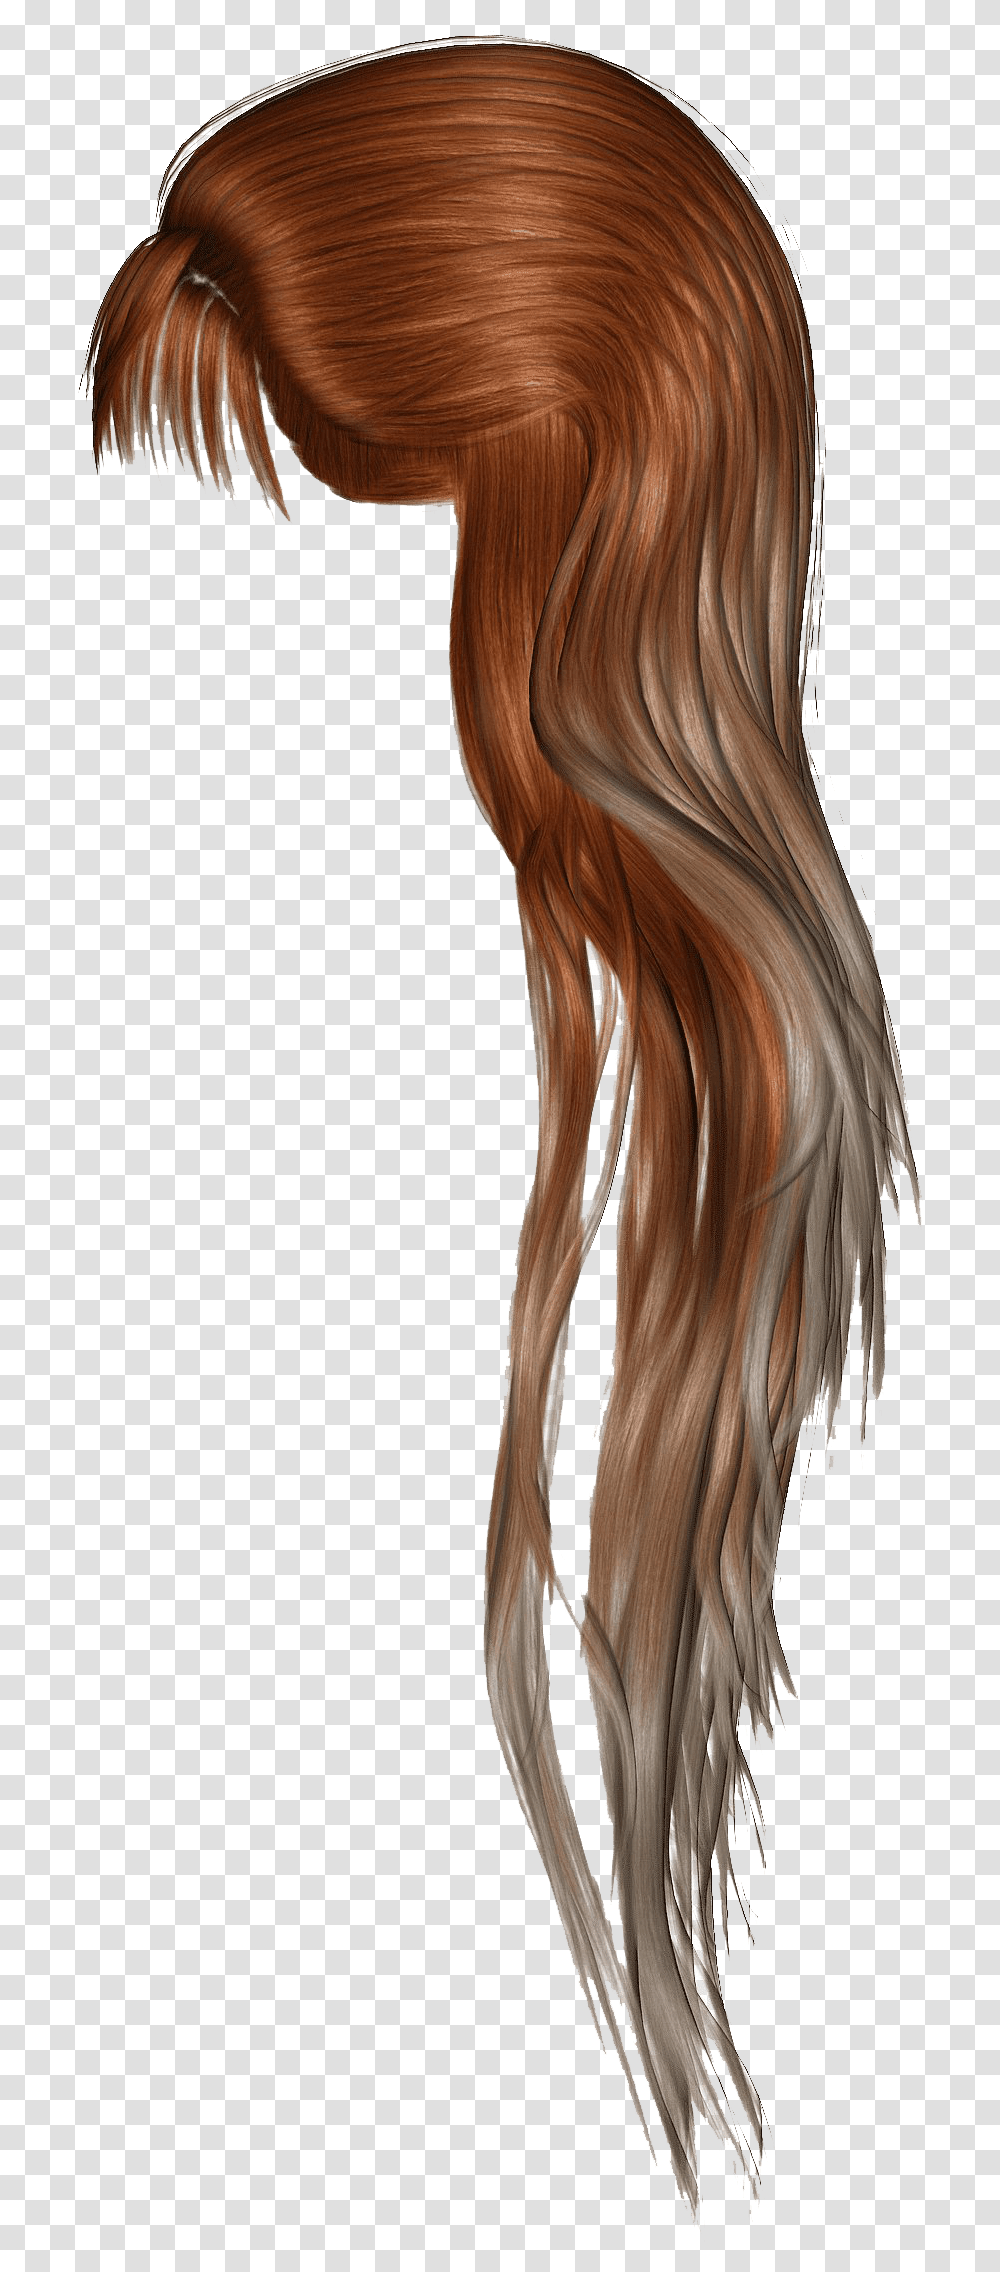 Brown Women Hair Hd Image Ponytail Hair Painting, Bird, Animal, Wig Transparent Png